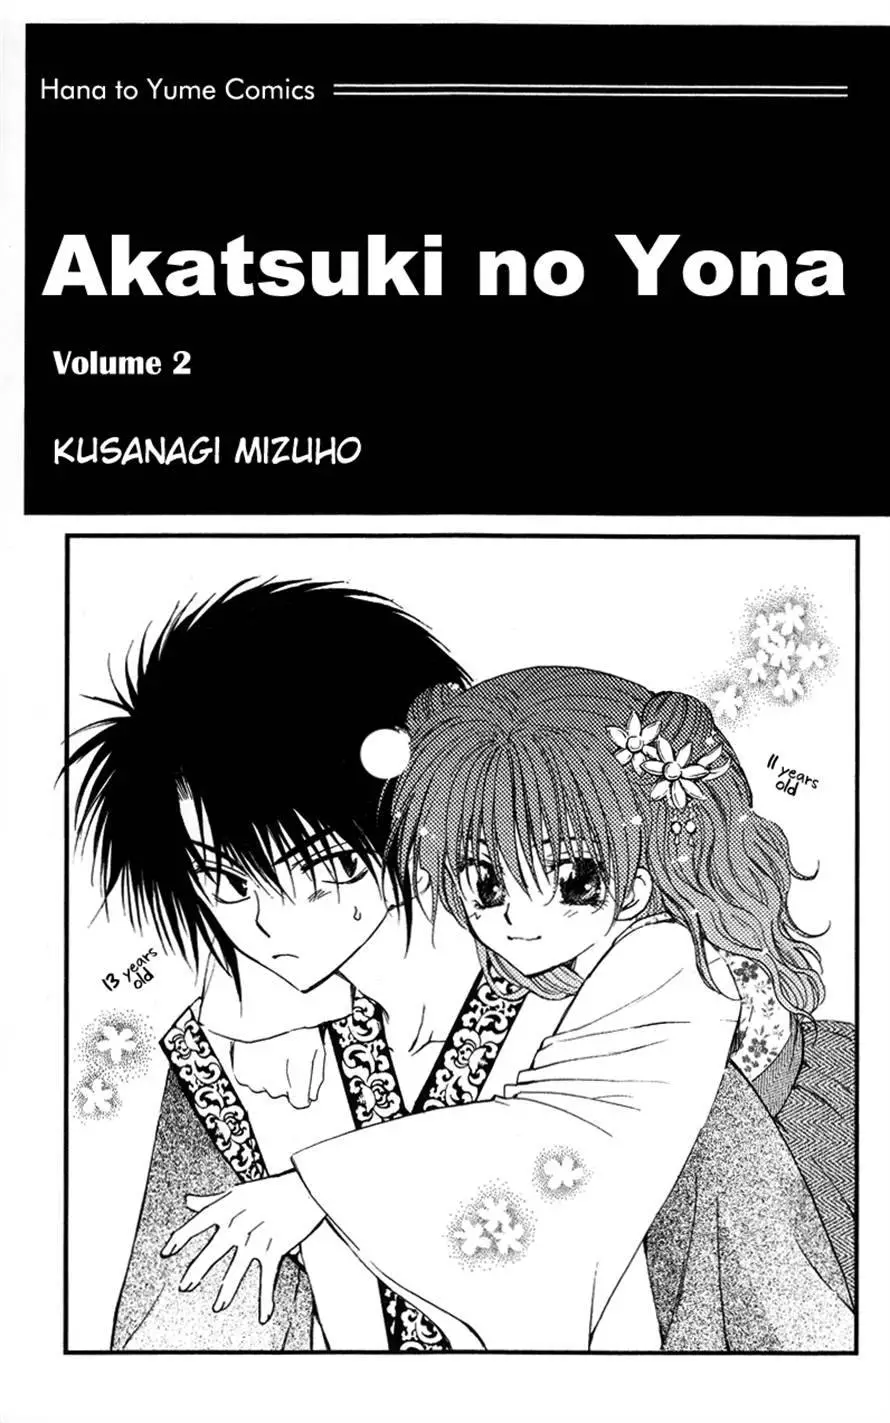 Akatsuki no Yona - 6 page p_00002